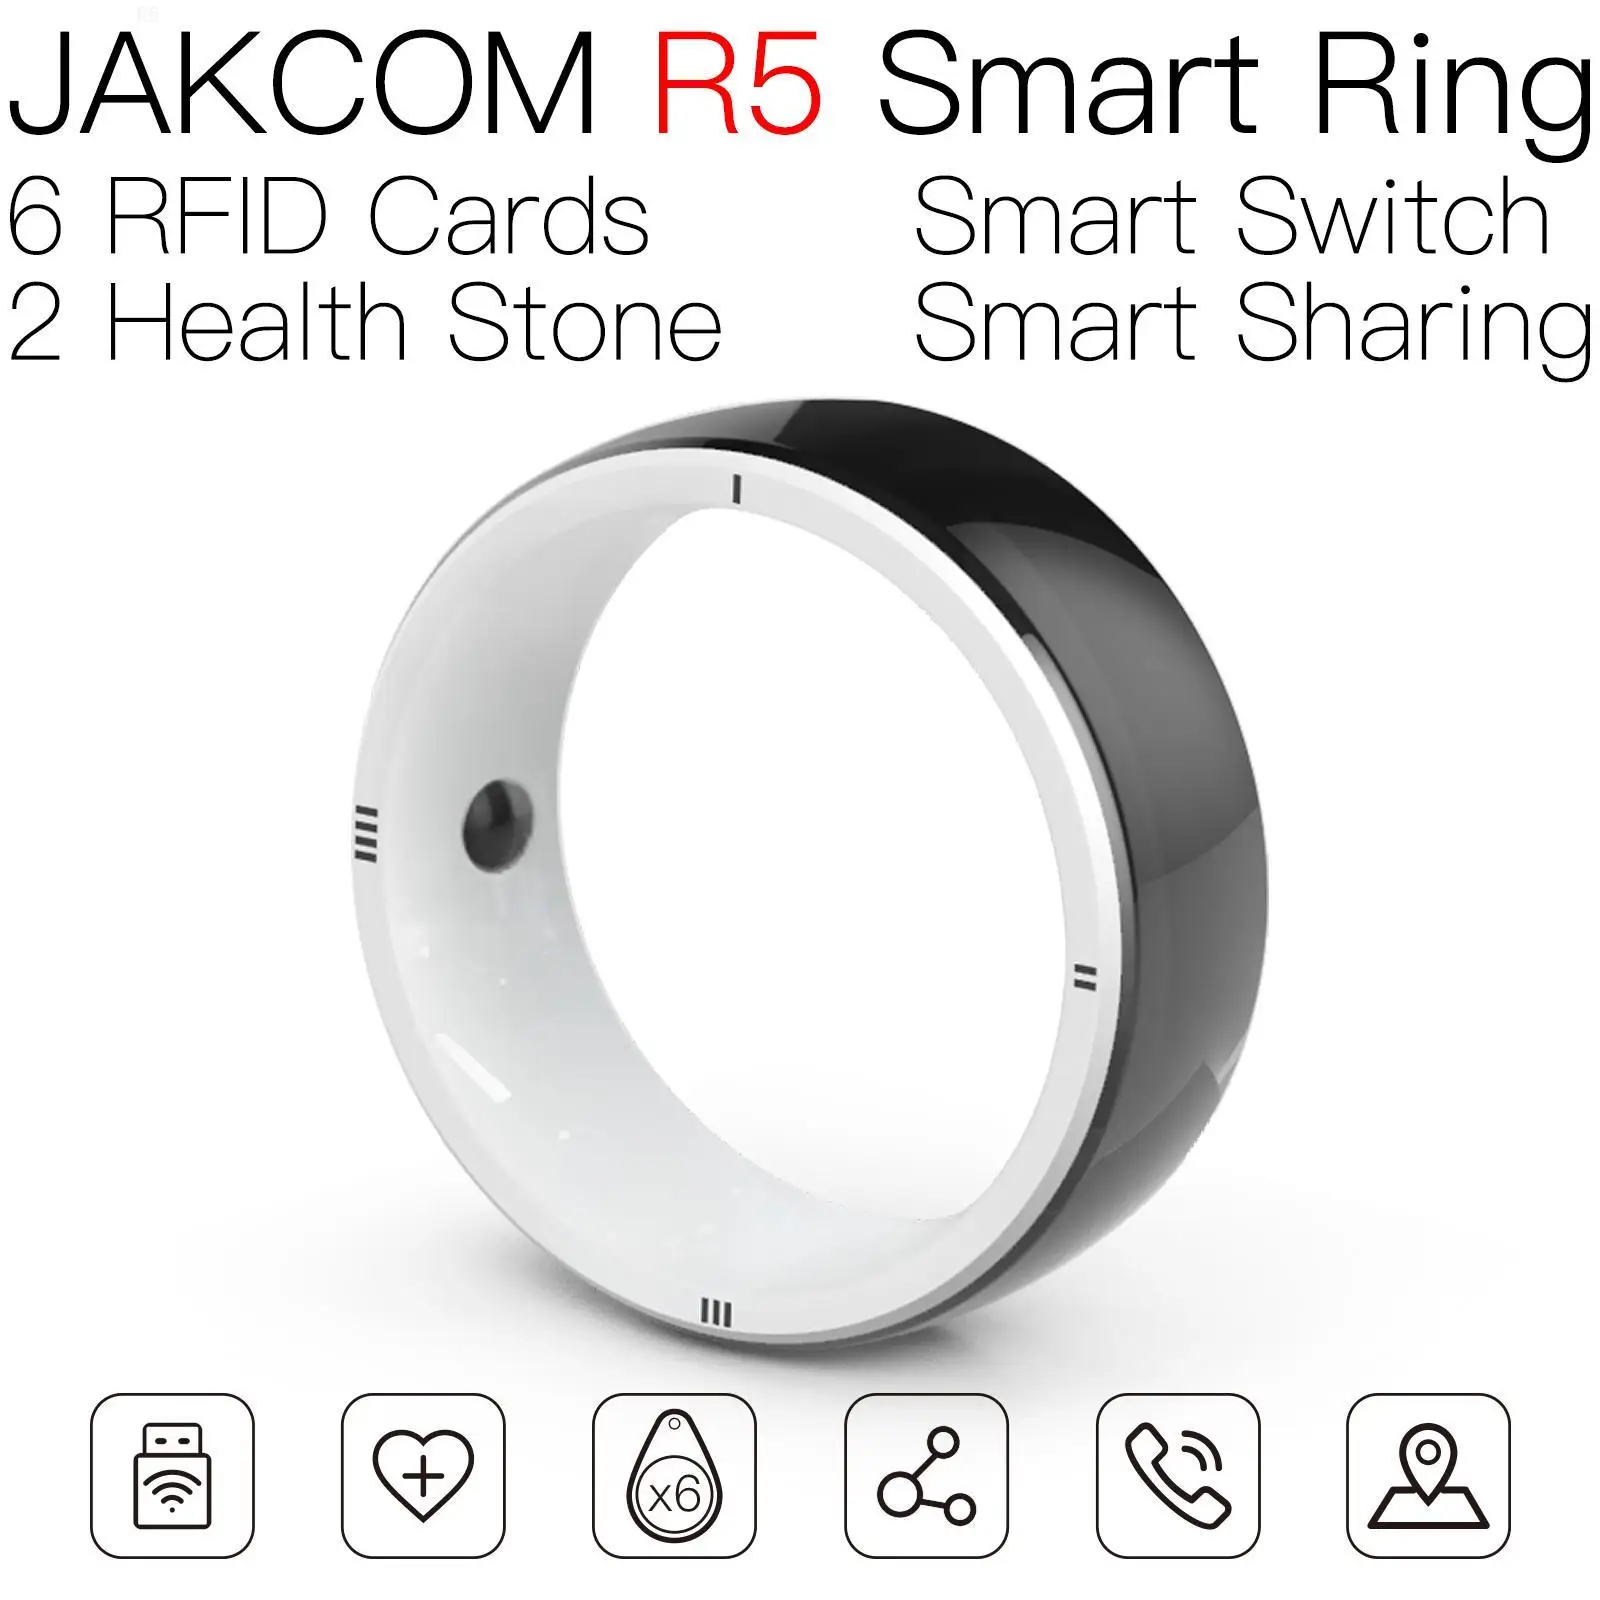 

Смарт-кольцо JAKCOM R5, новый продукт, как стандартная карта, мини-микро-циферблат, логотип, 4 лазерных rfid-ридера, стикер для кошек, вода